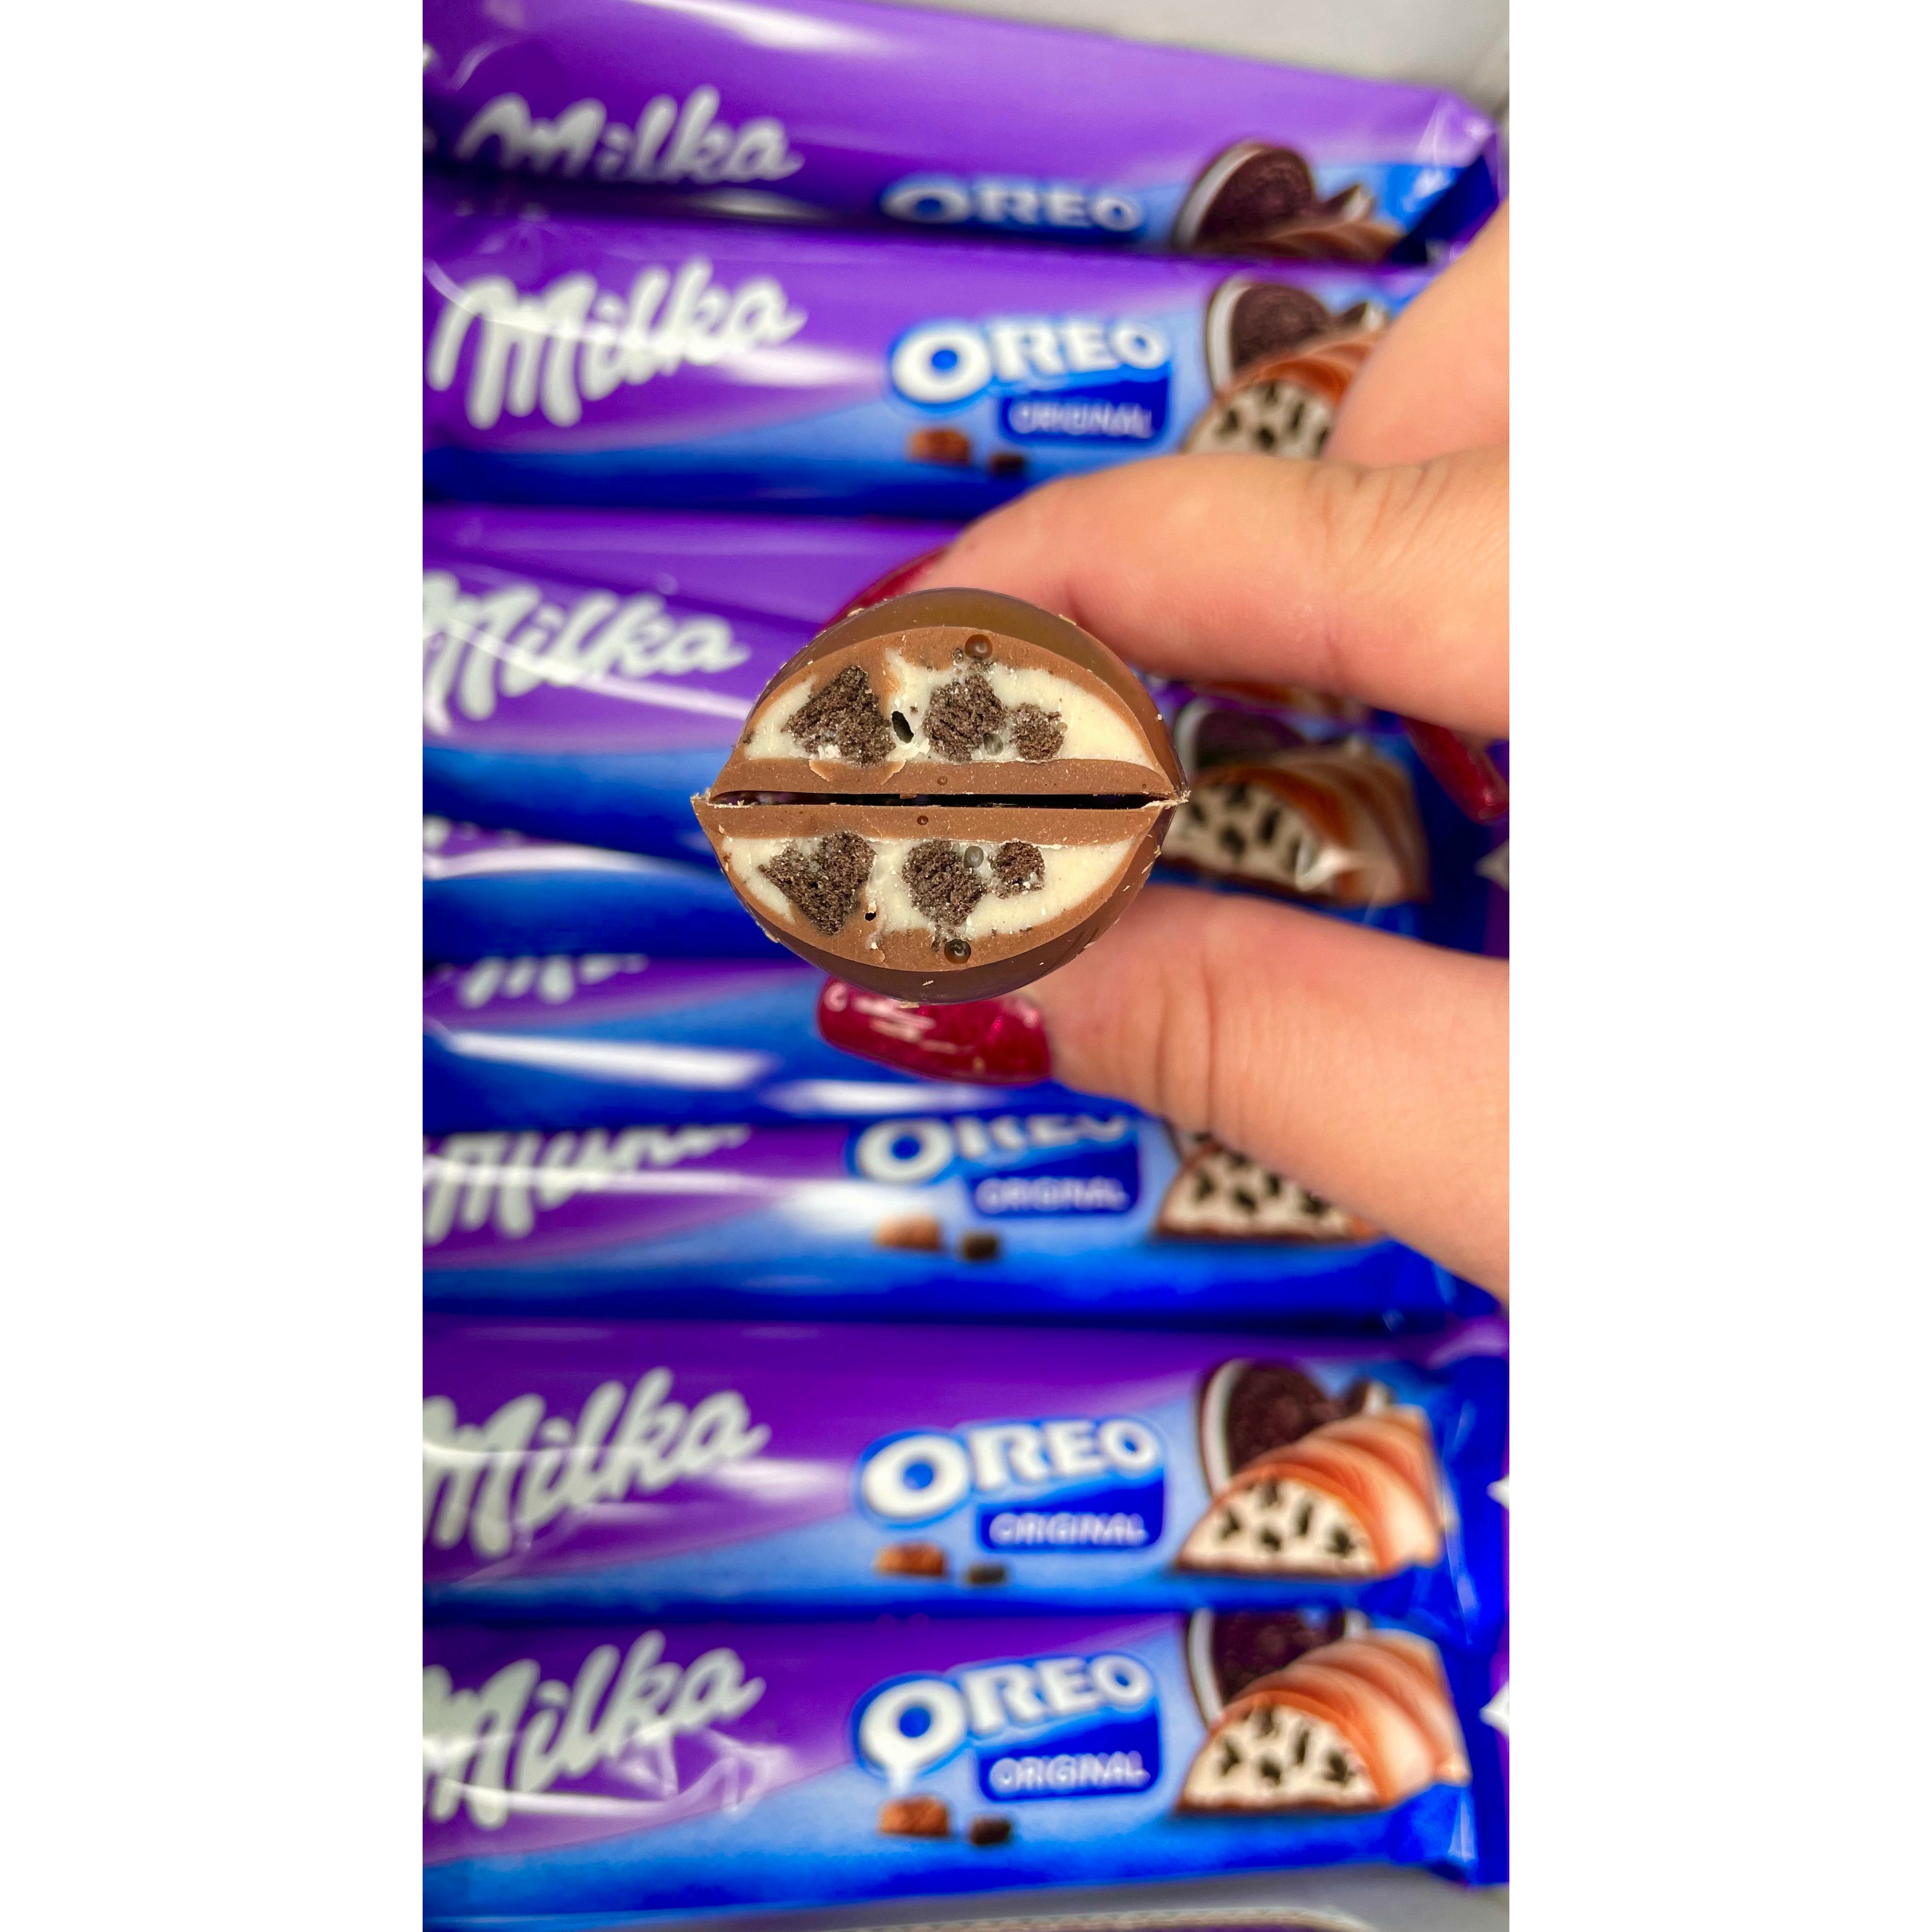 Plusieurs emballages du Milka Oreo Bar avec en premier plan une main qui tient une barre chocolatée coupée en 2 et dévoile son intérieur 